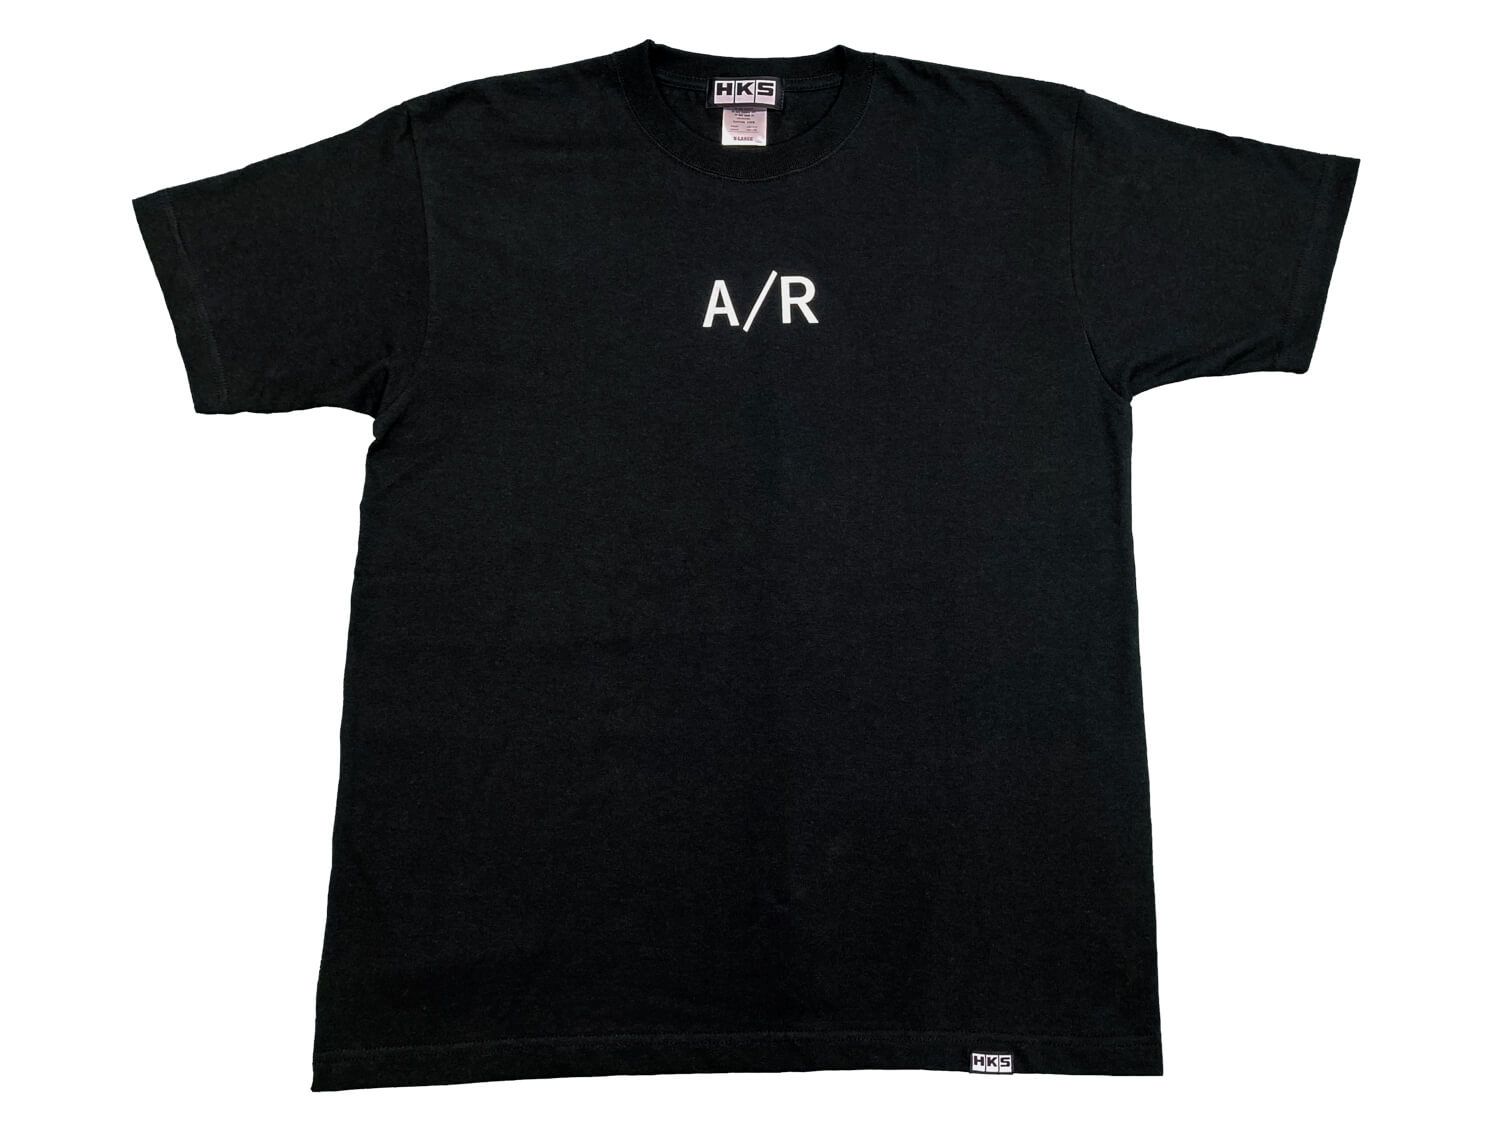 HKS A/R T-Shirt Black